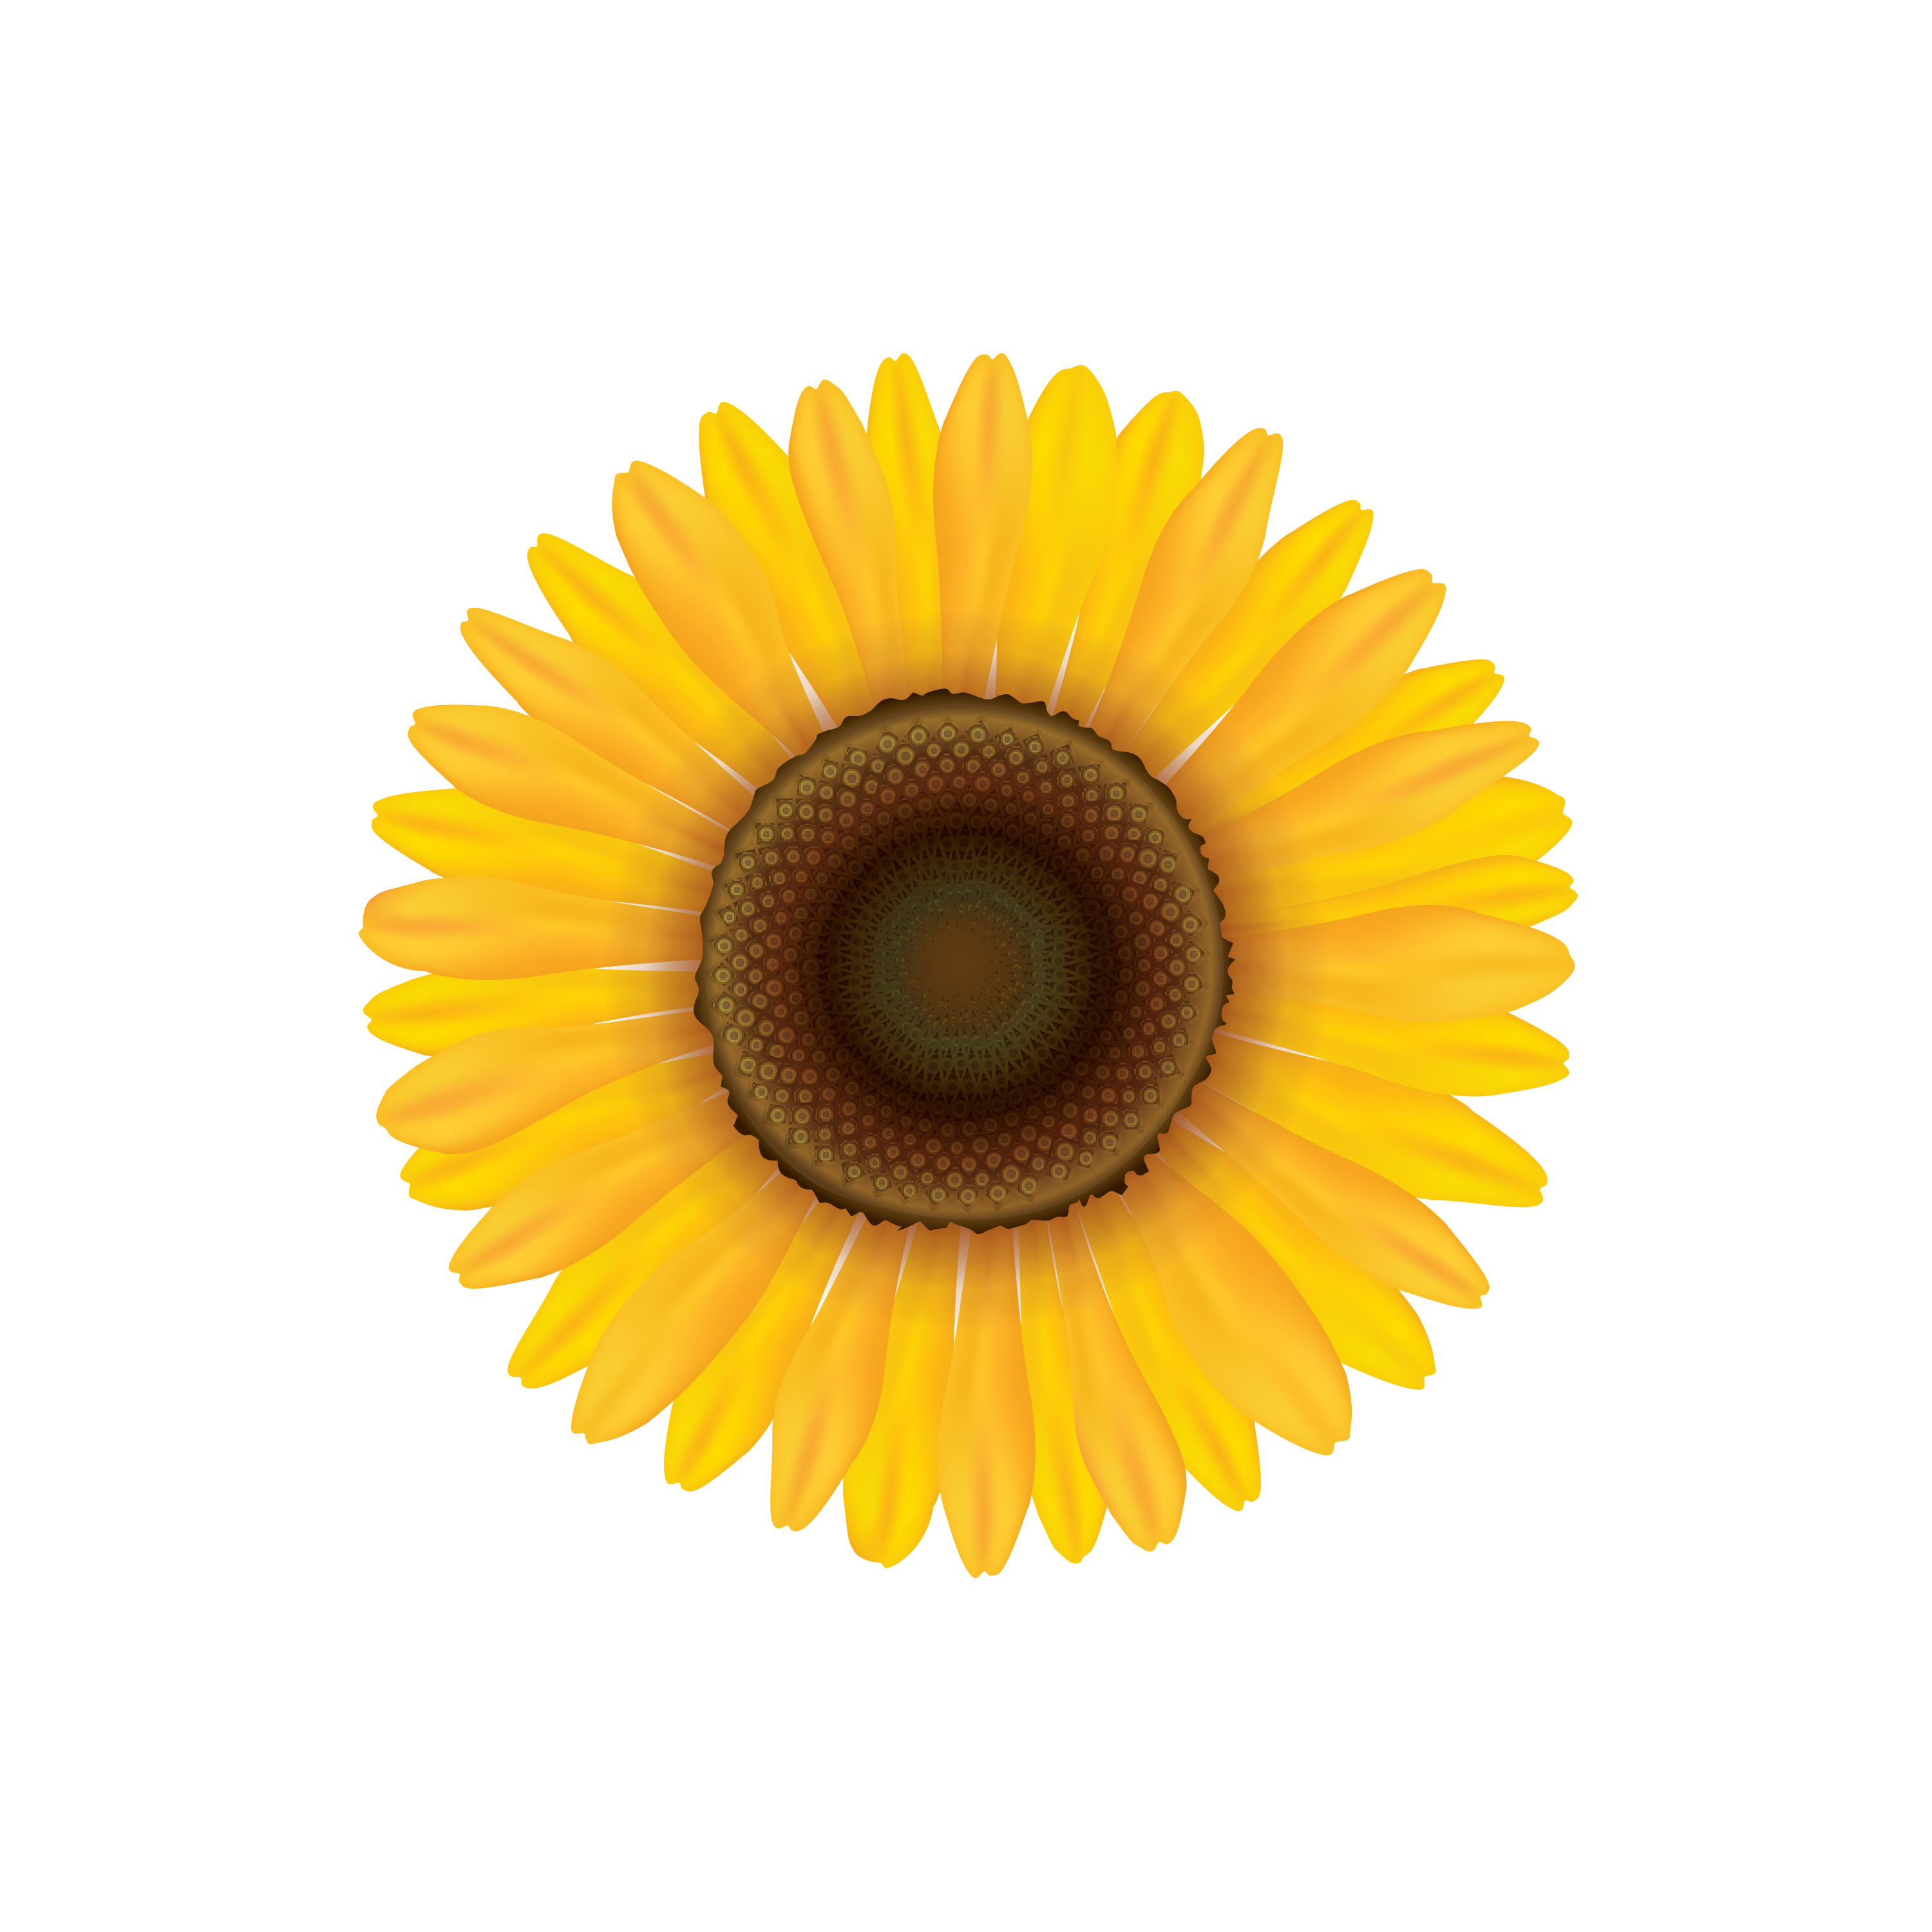 Download Sunflower. Summer flower isolated. Vecor illustration ...